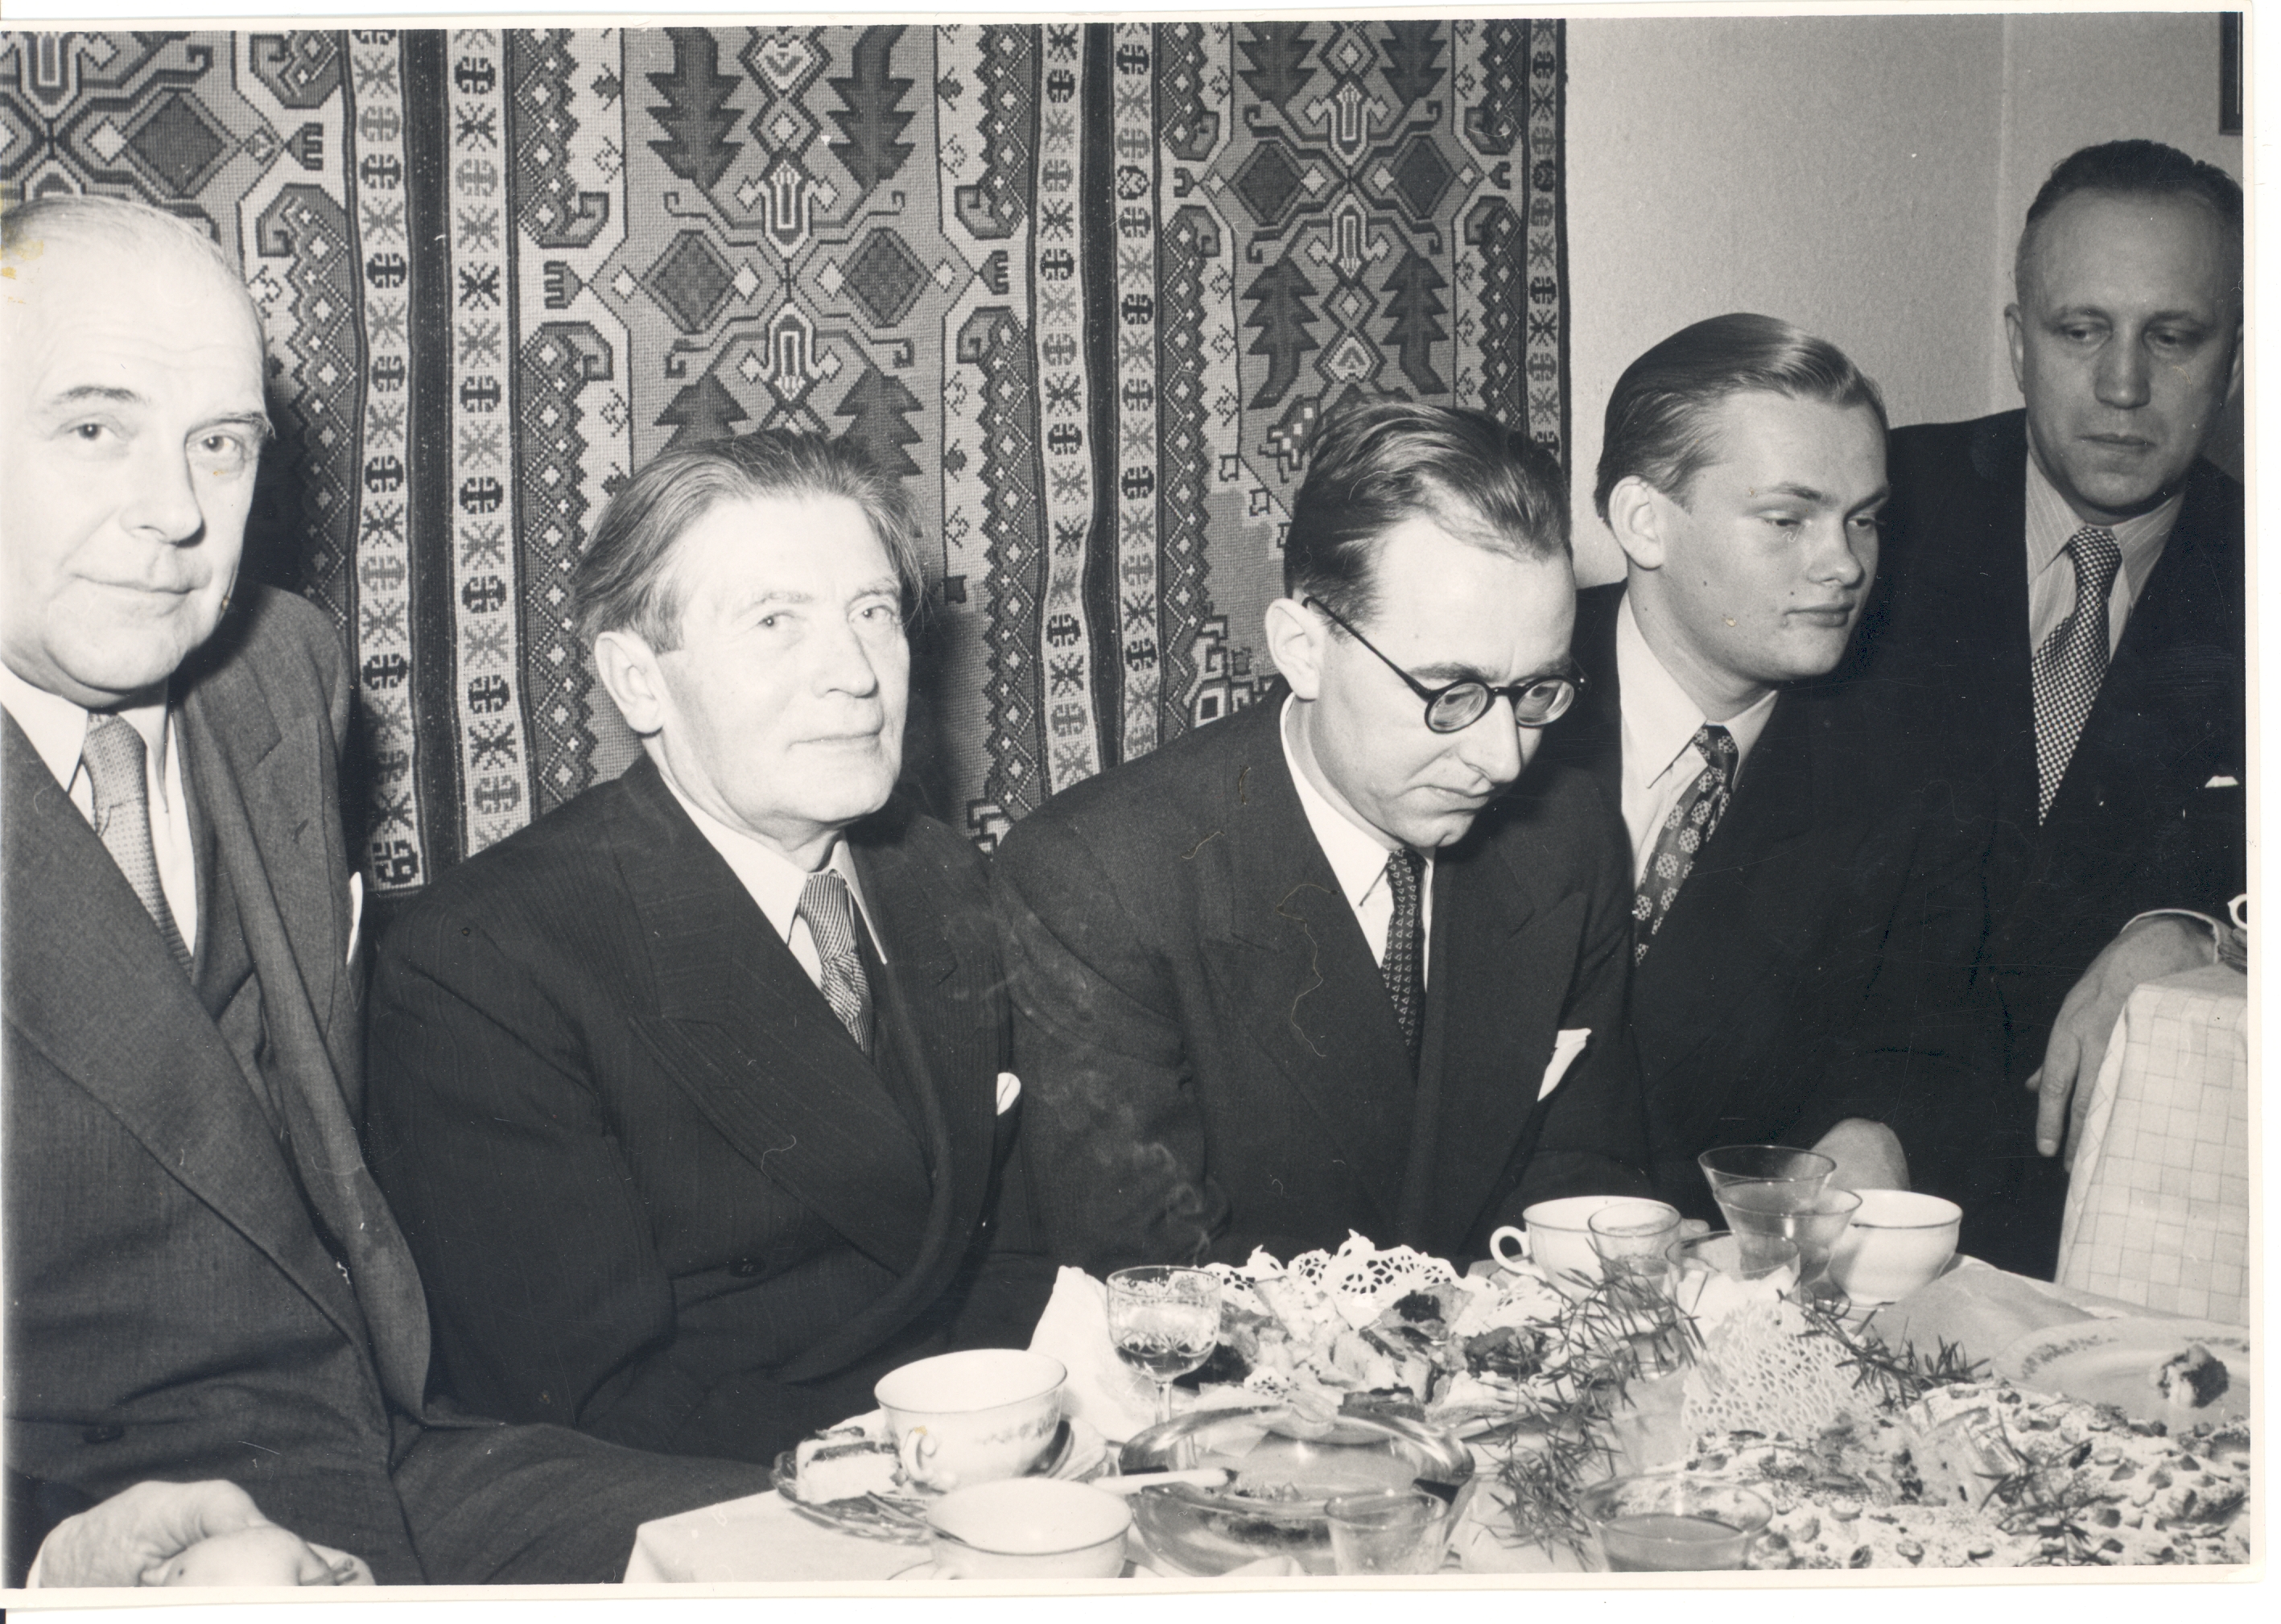 The 70th birthday of Johannes Aaviku in 1950. VAS. : Otto Pukk, Johannes Aavik, Valter Tauli, Reino Sepp